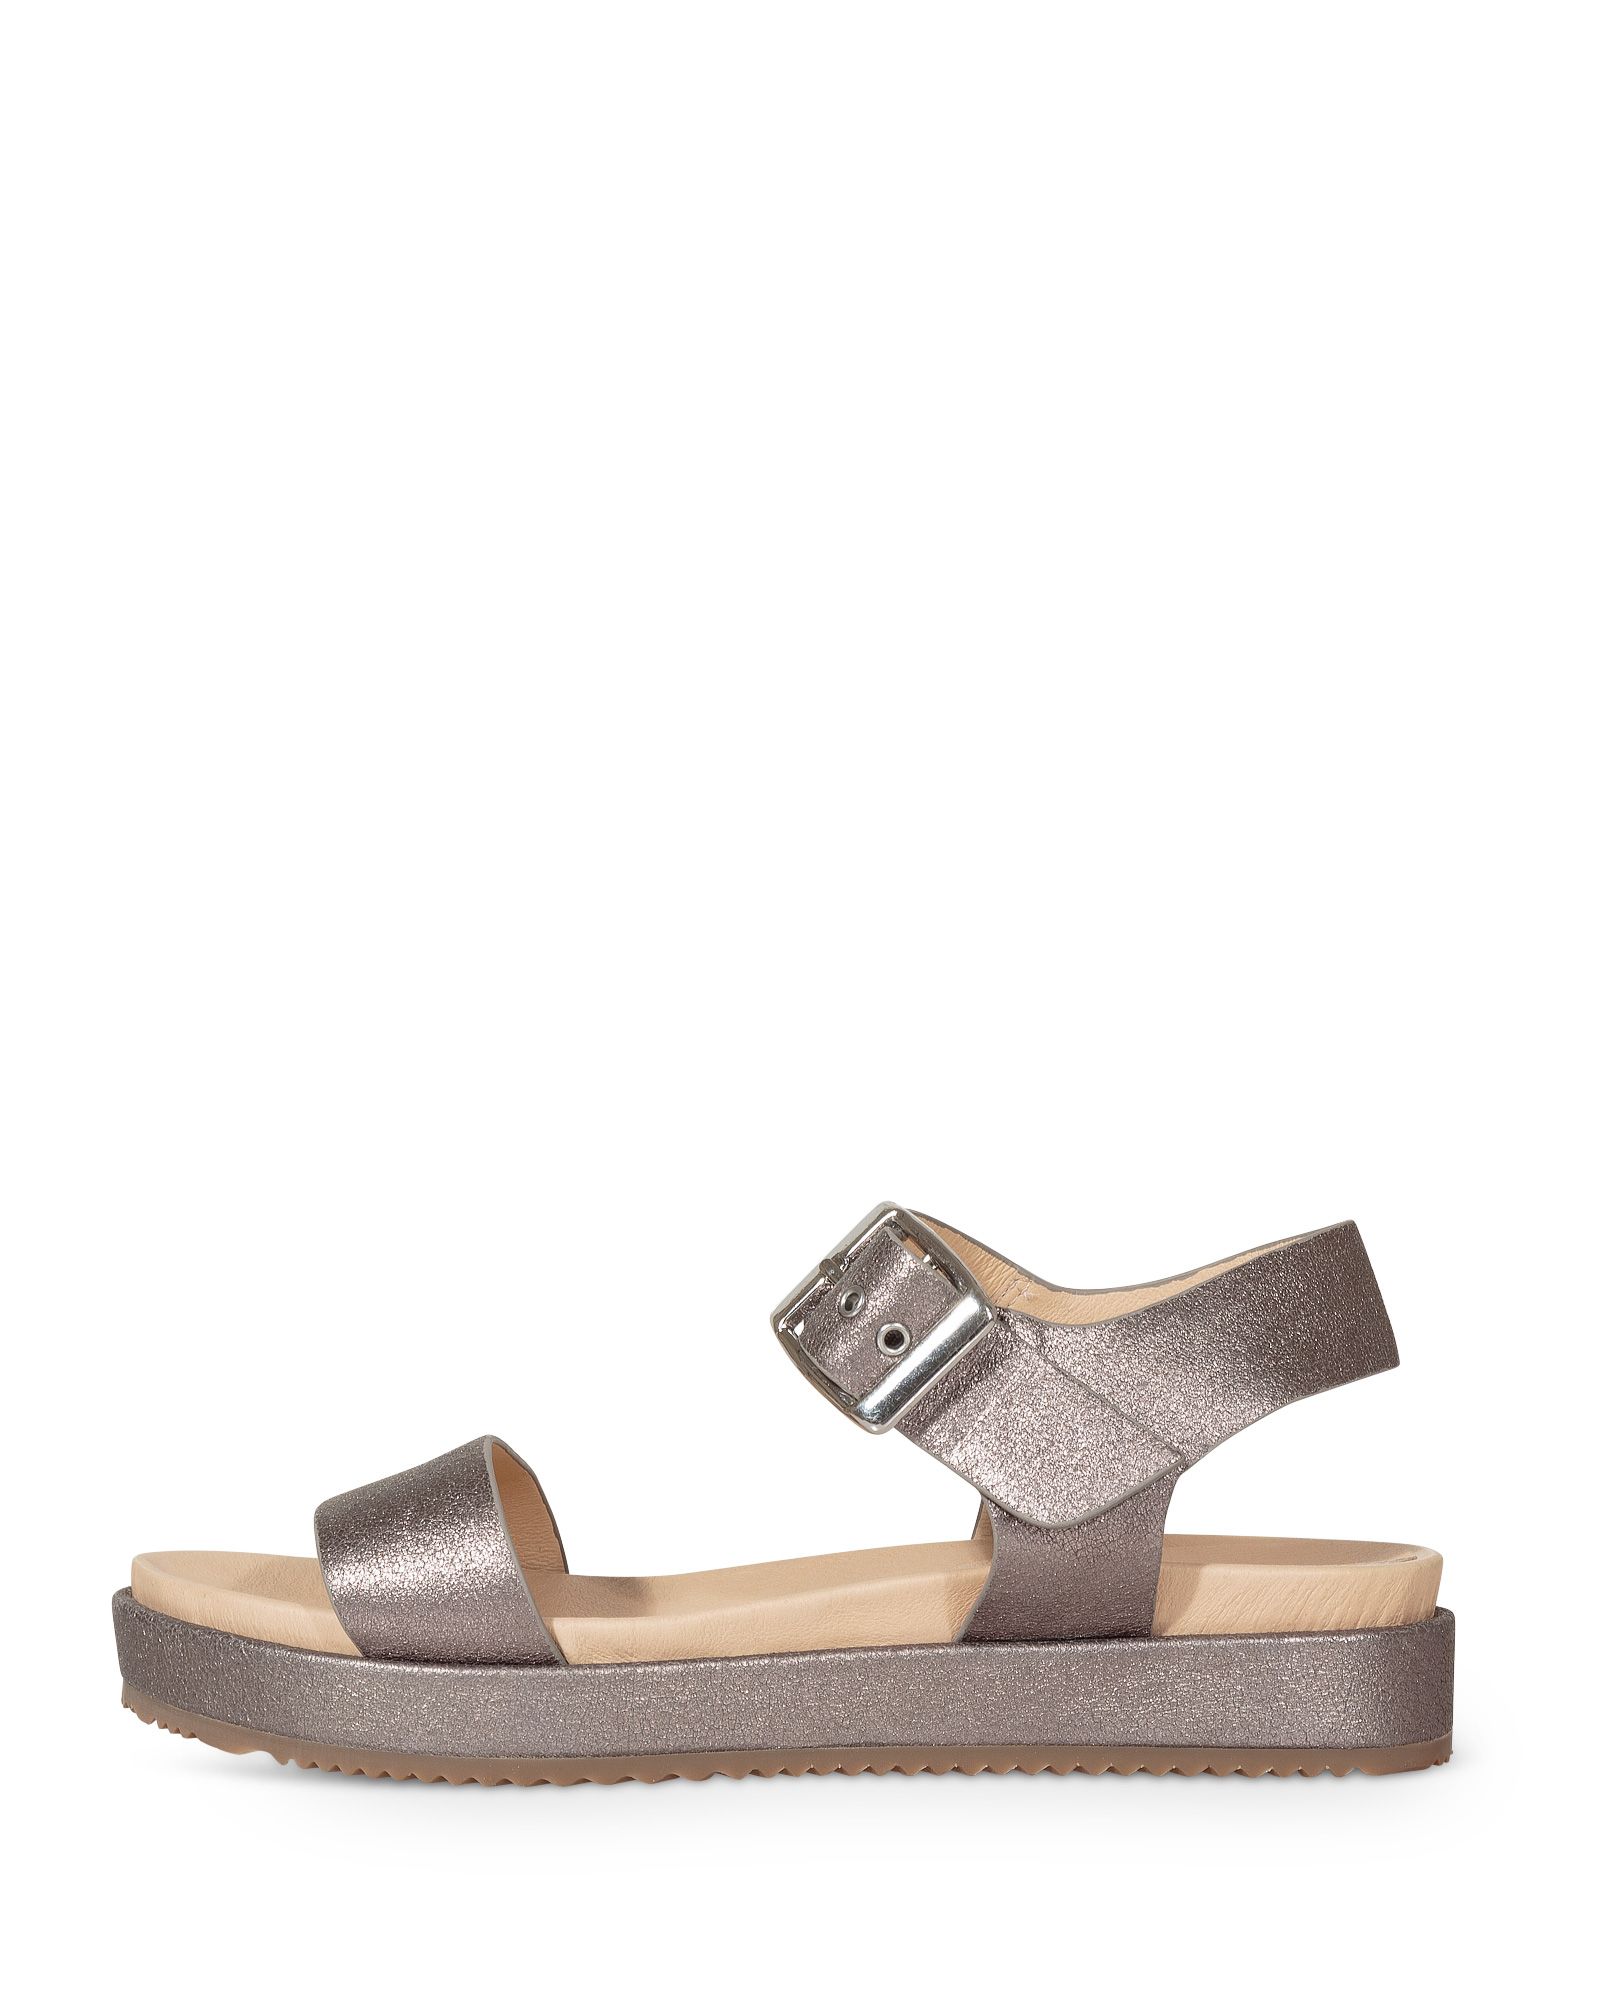 silver flatform sandals wholesale e6a1f 